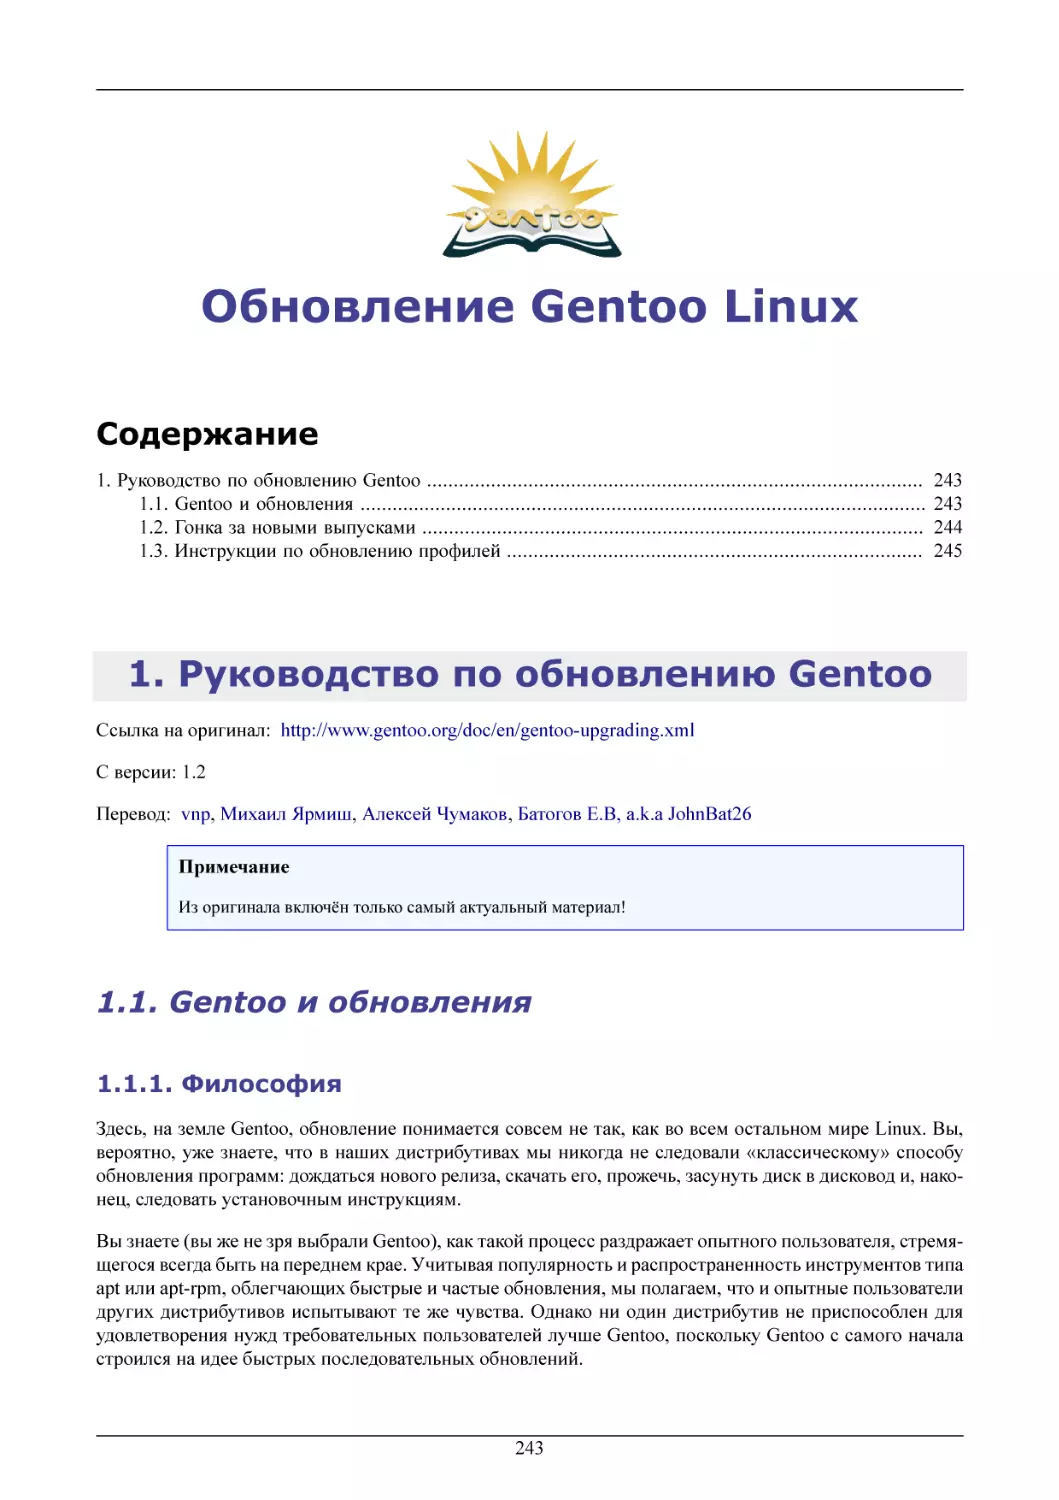 Обновление Gentoo Linux
Руководство по обновлению Gentoo
Gentoo и обновления
Философия